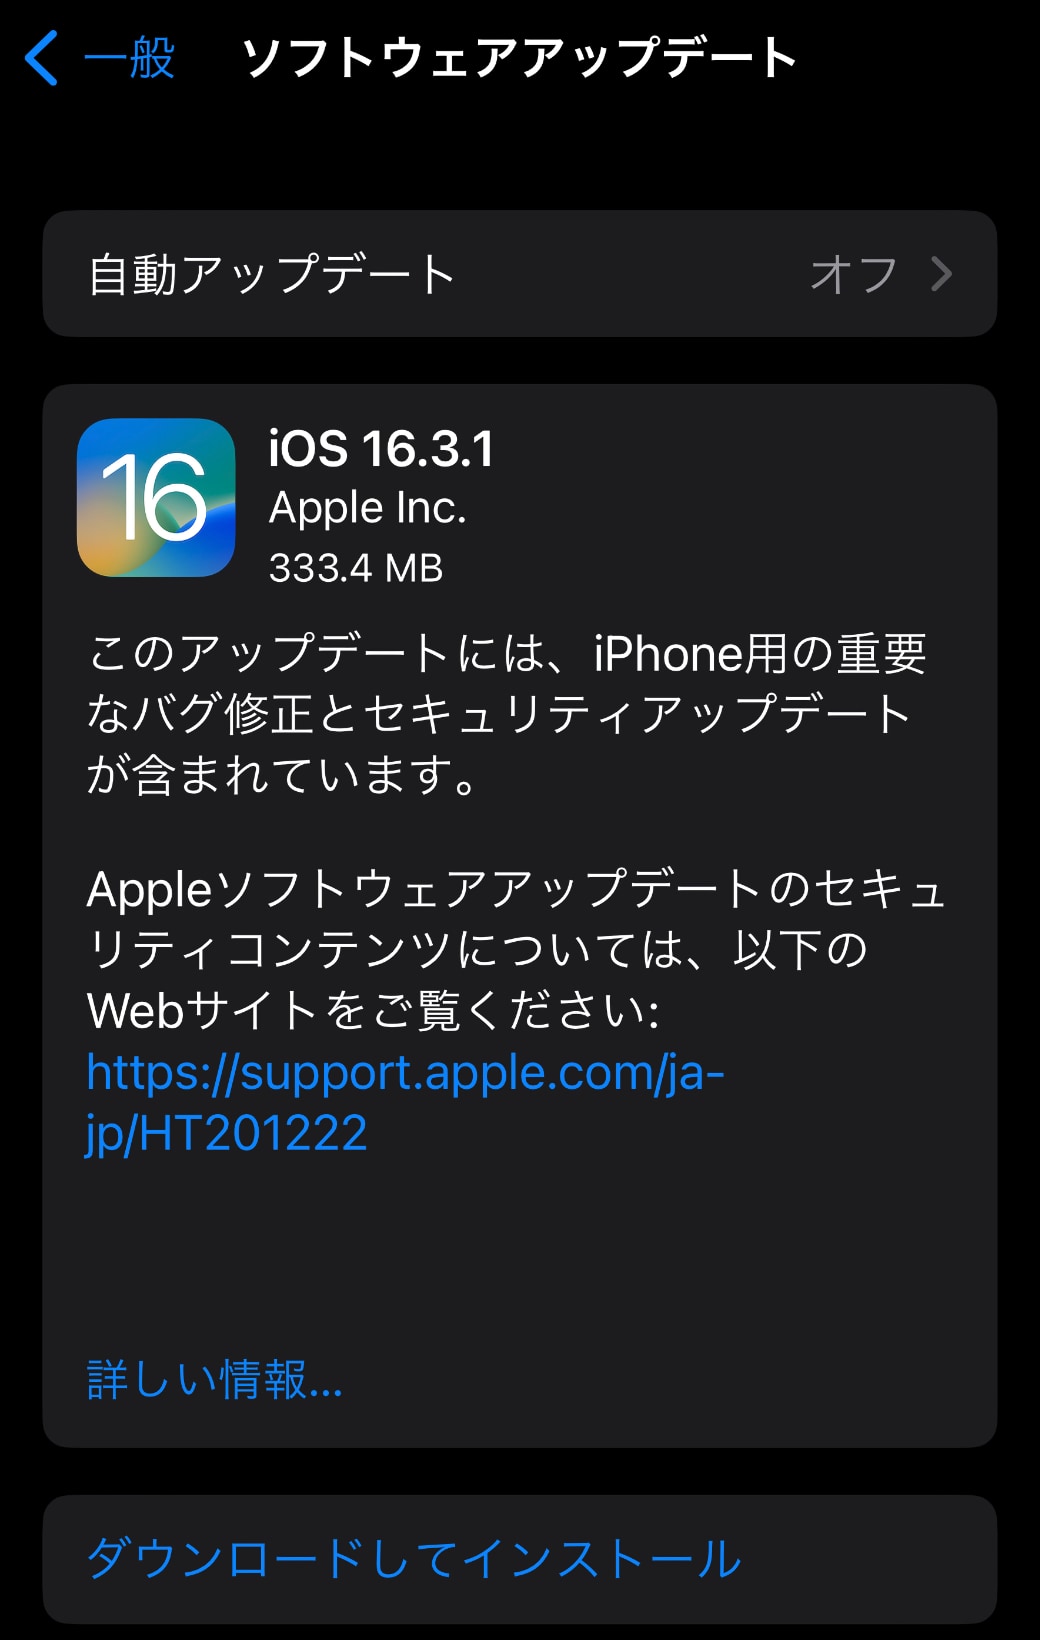 iOS 16.3.1